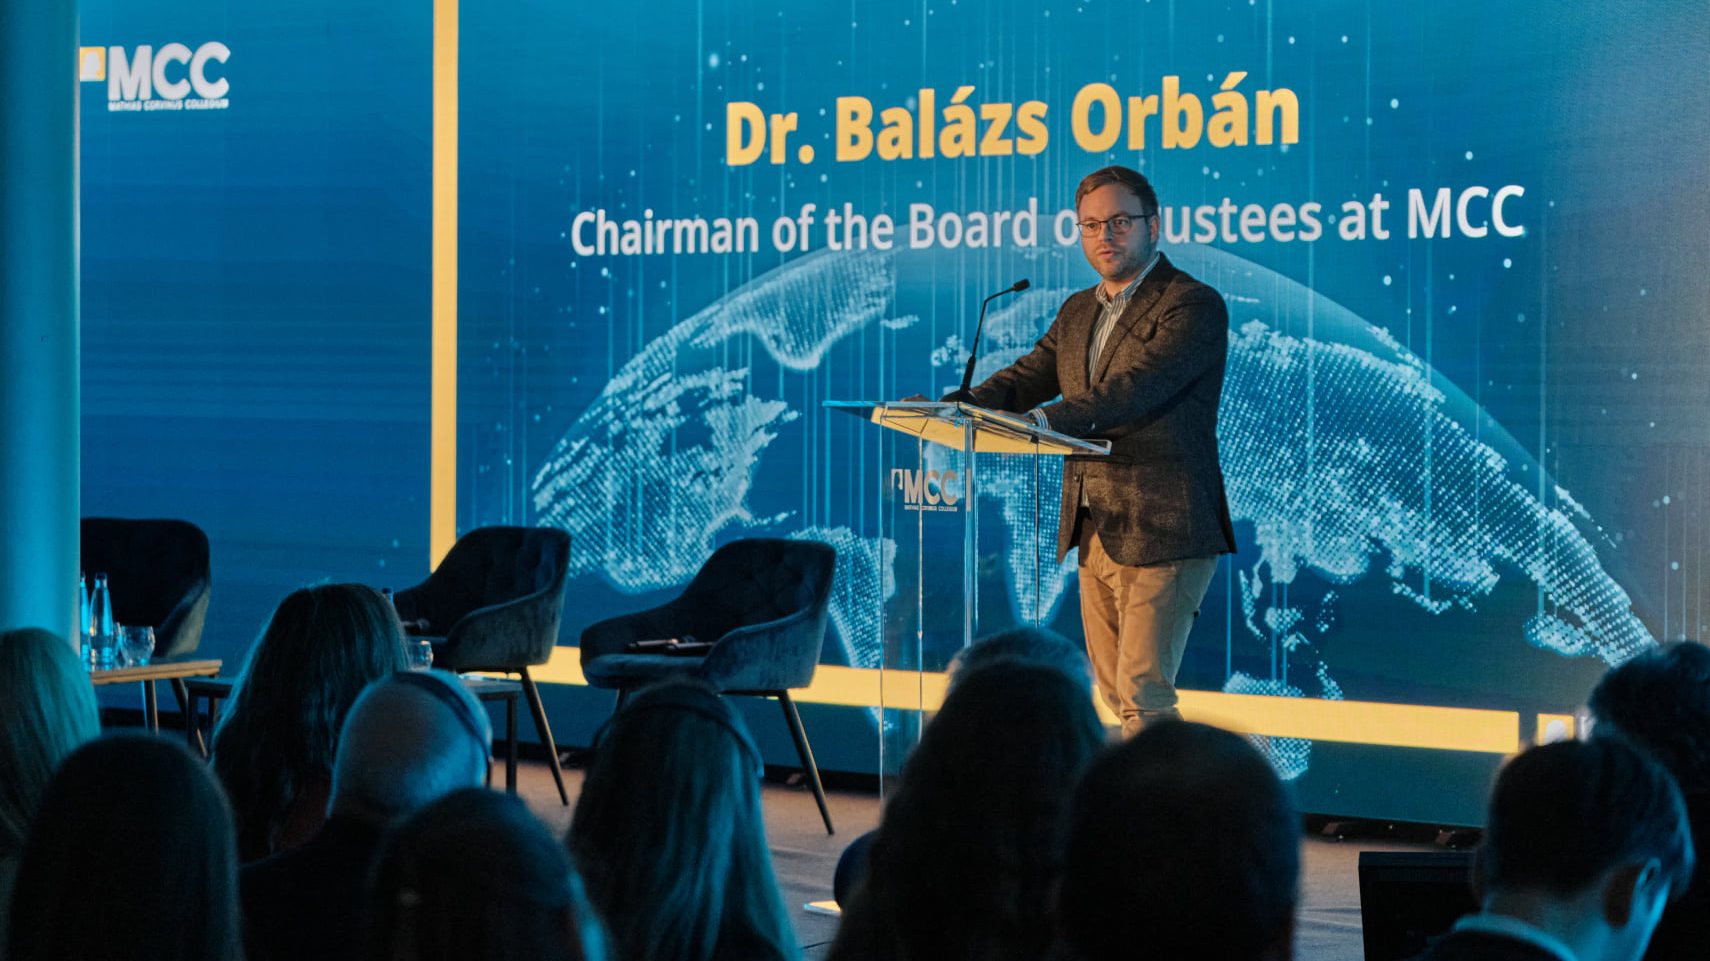 Orbán Balázs: A valóságtól elrugaszkodott gondolatok vannak a sajtóban